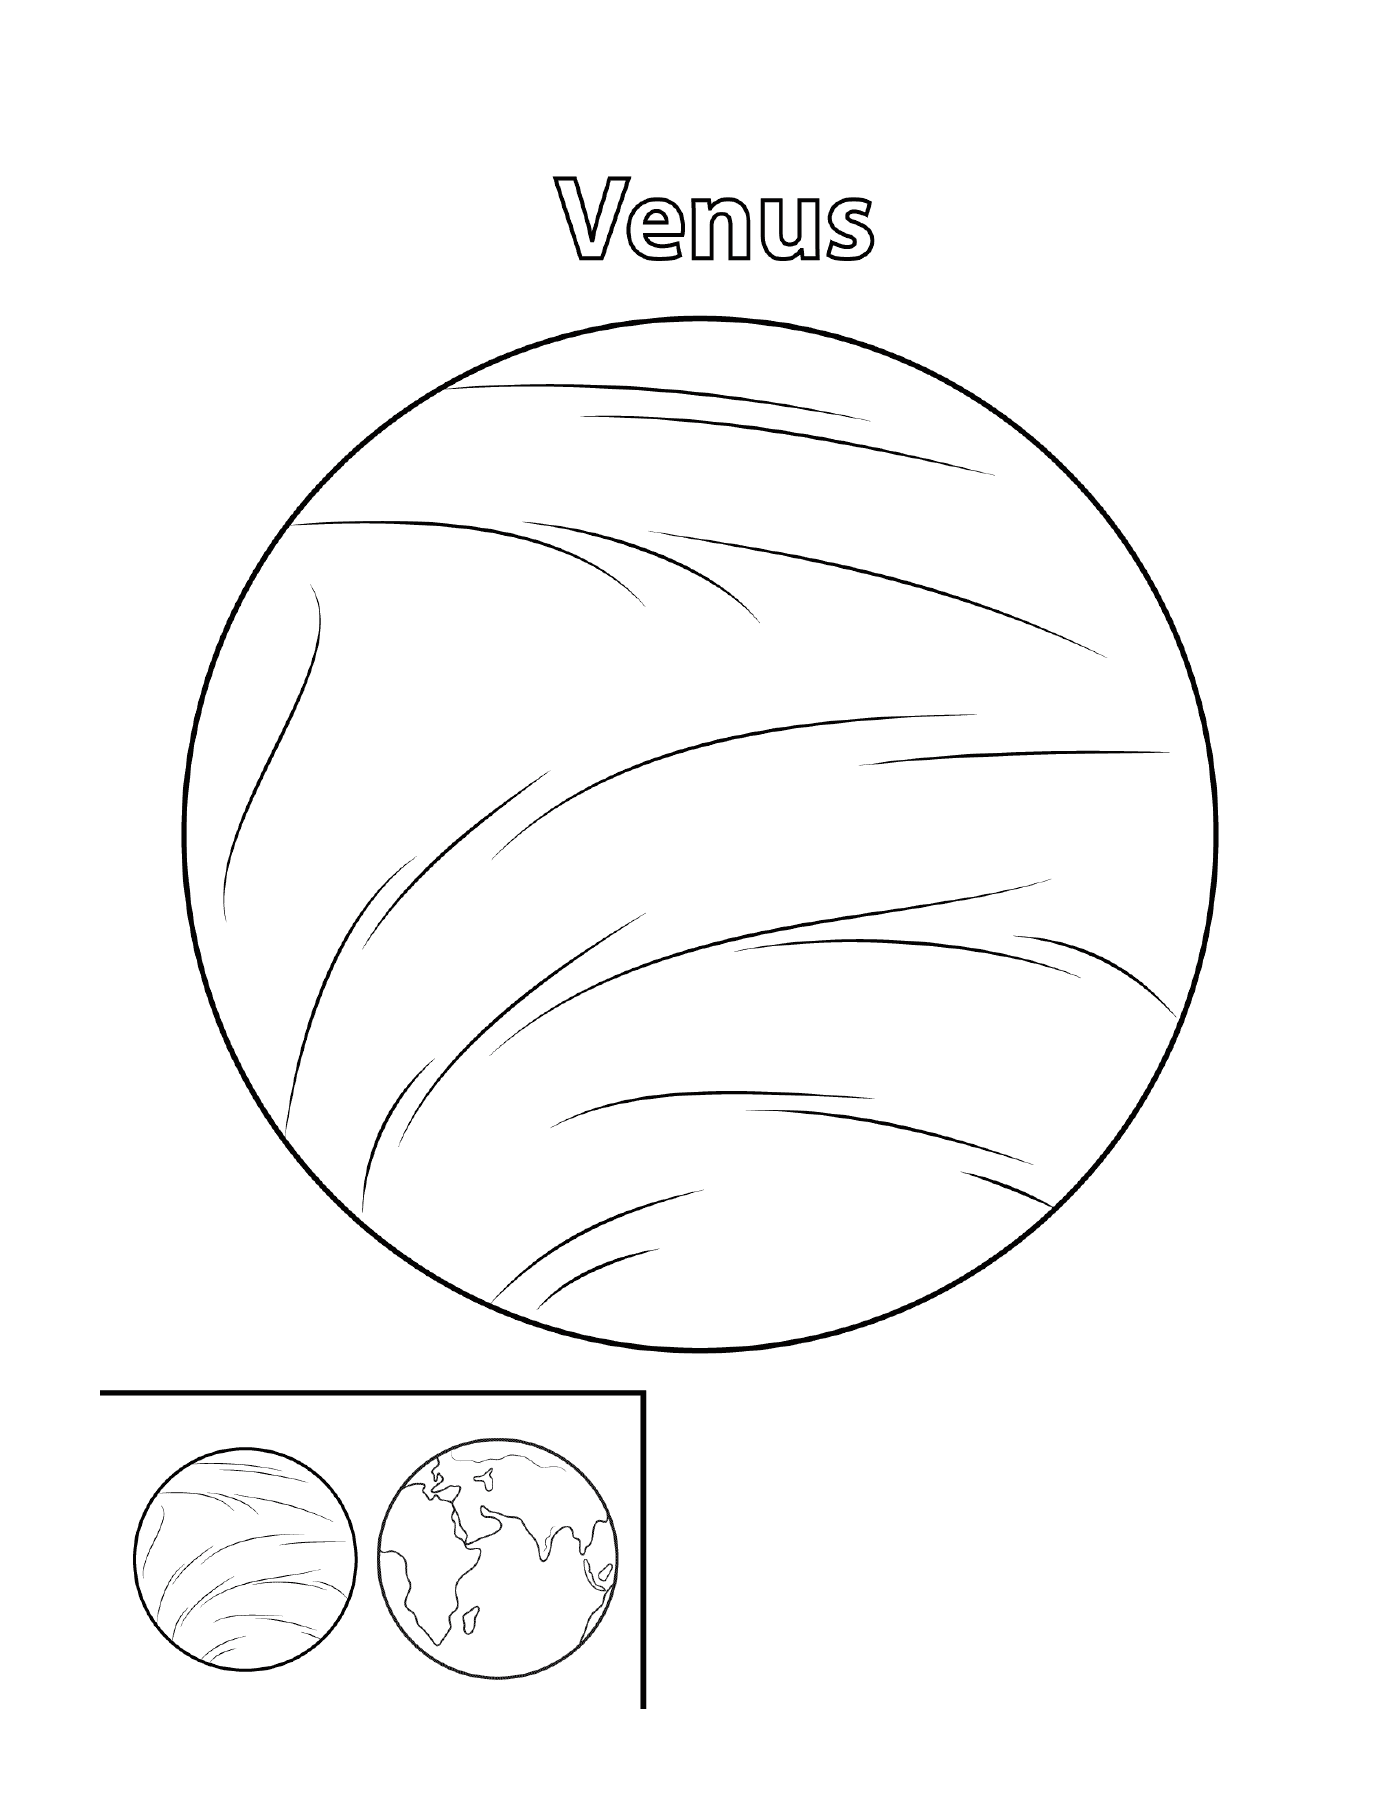  Pianeta Venere nello spazio 